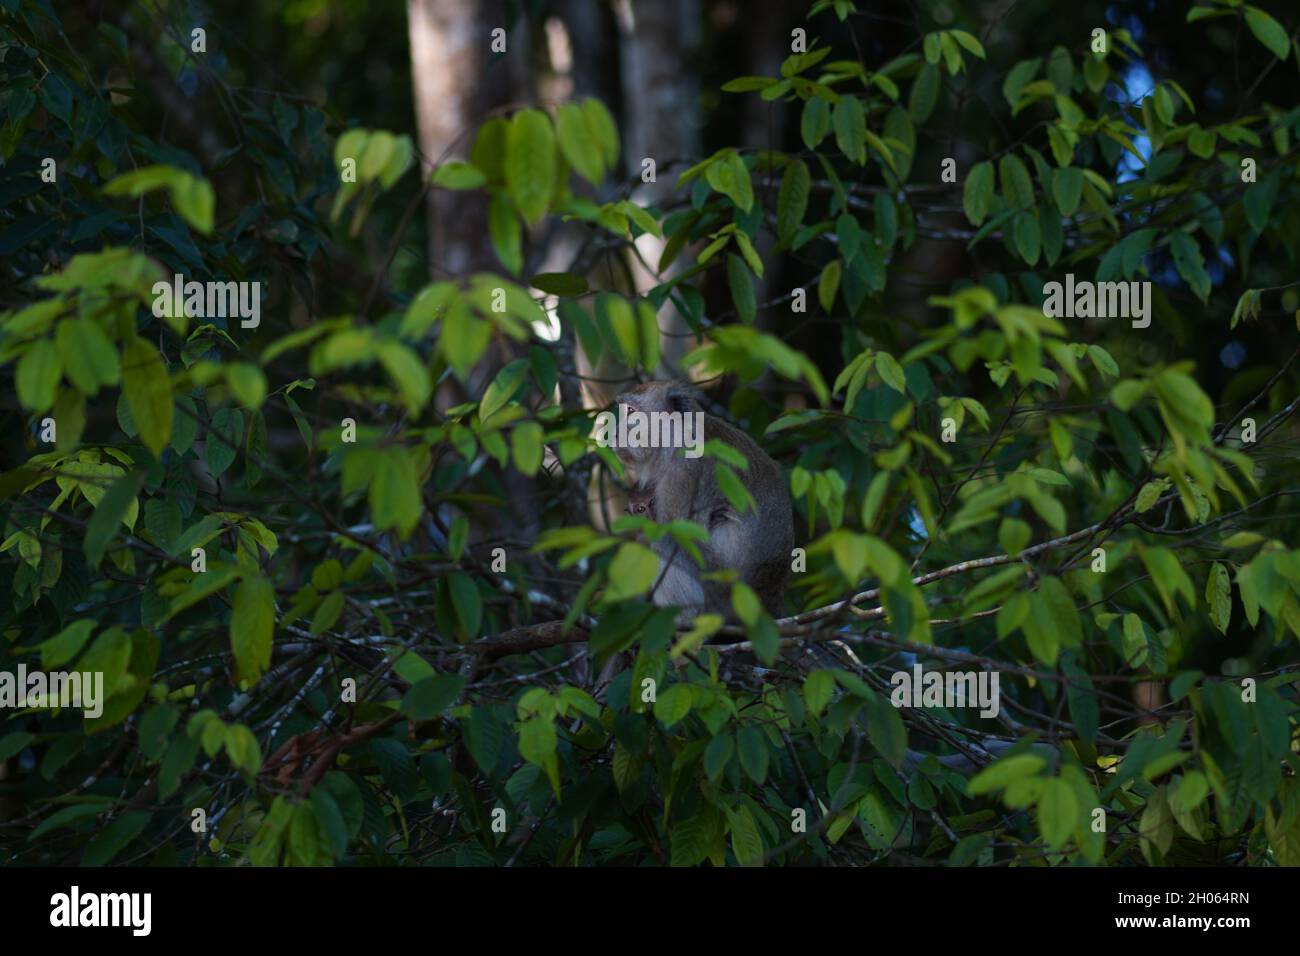 Une mère singe avec son enfant sur une branche d'arbre verte avec des feuilles vertes nature Banque D'Images